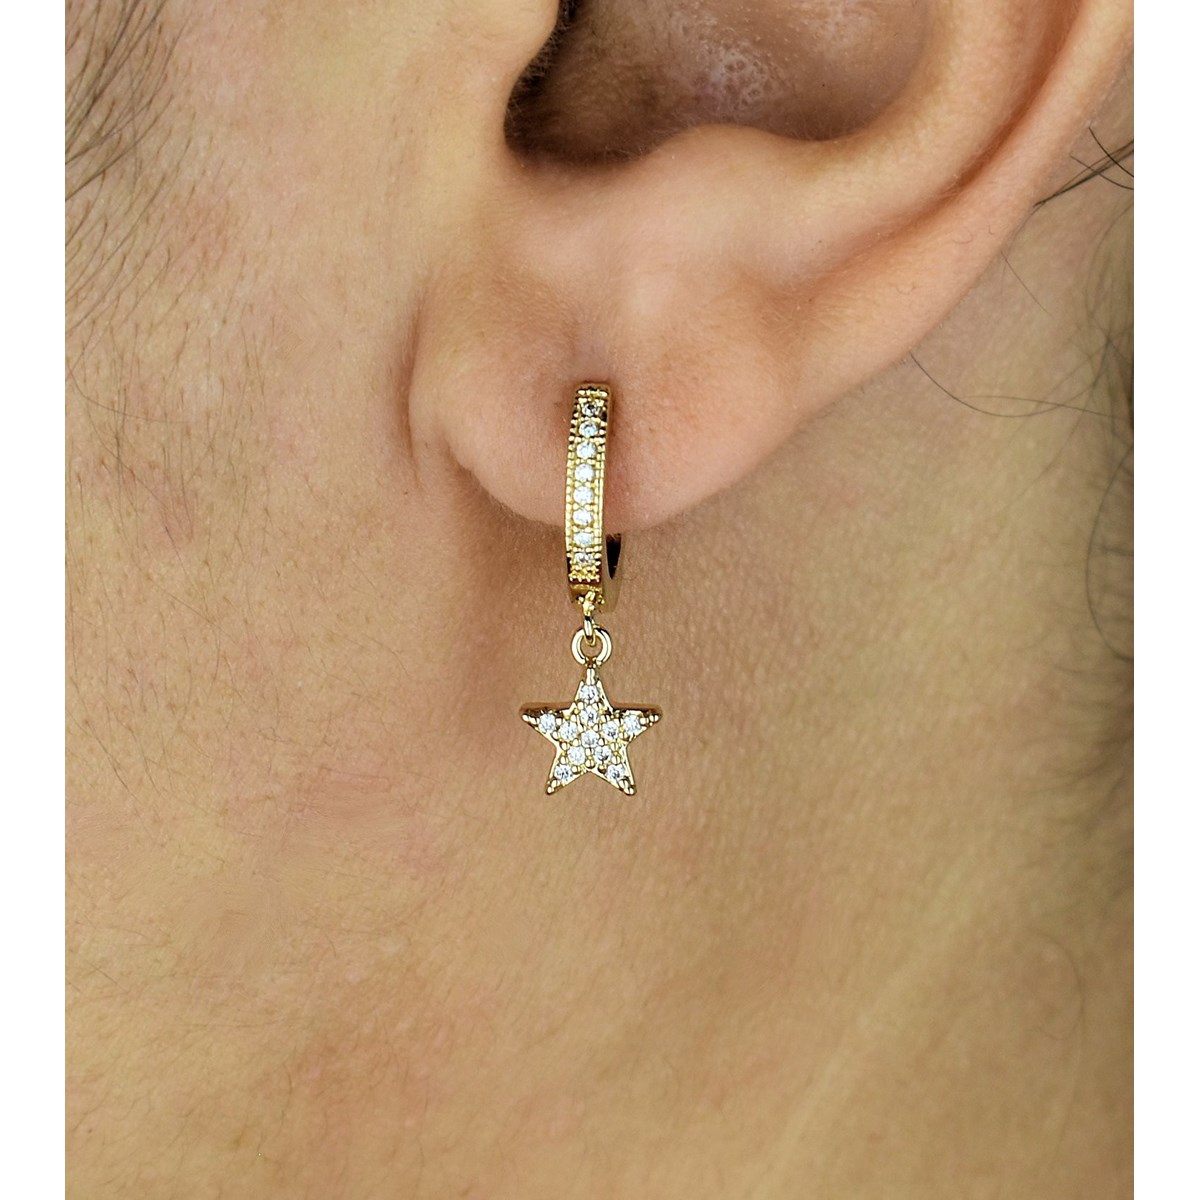 Boucles d'oreilles Mini Créoles étoile oxyde de zirconium pendante Plaqué or 750 3 microns - vue 2